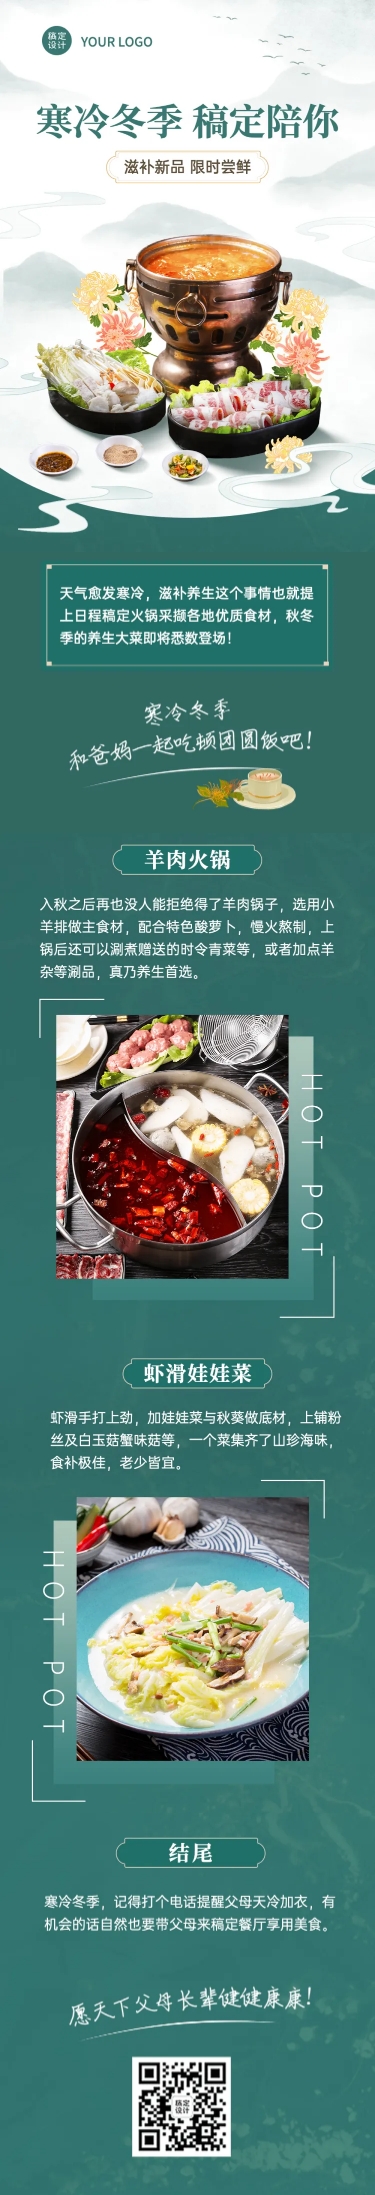 餐饮美食重阳节节日营销实景文章长图